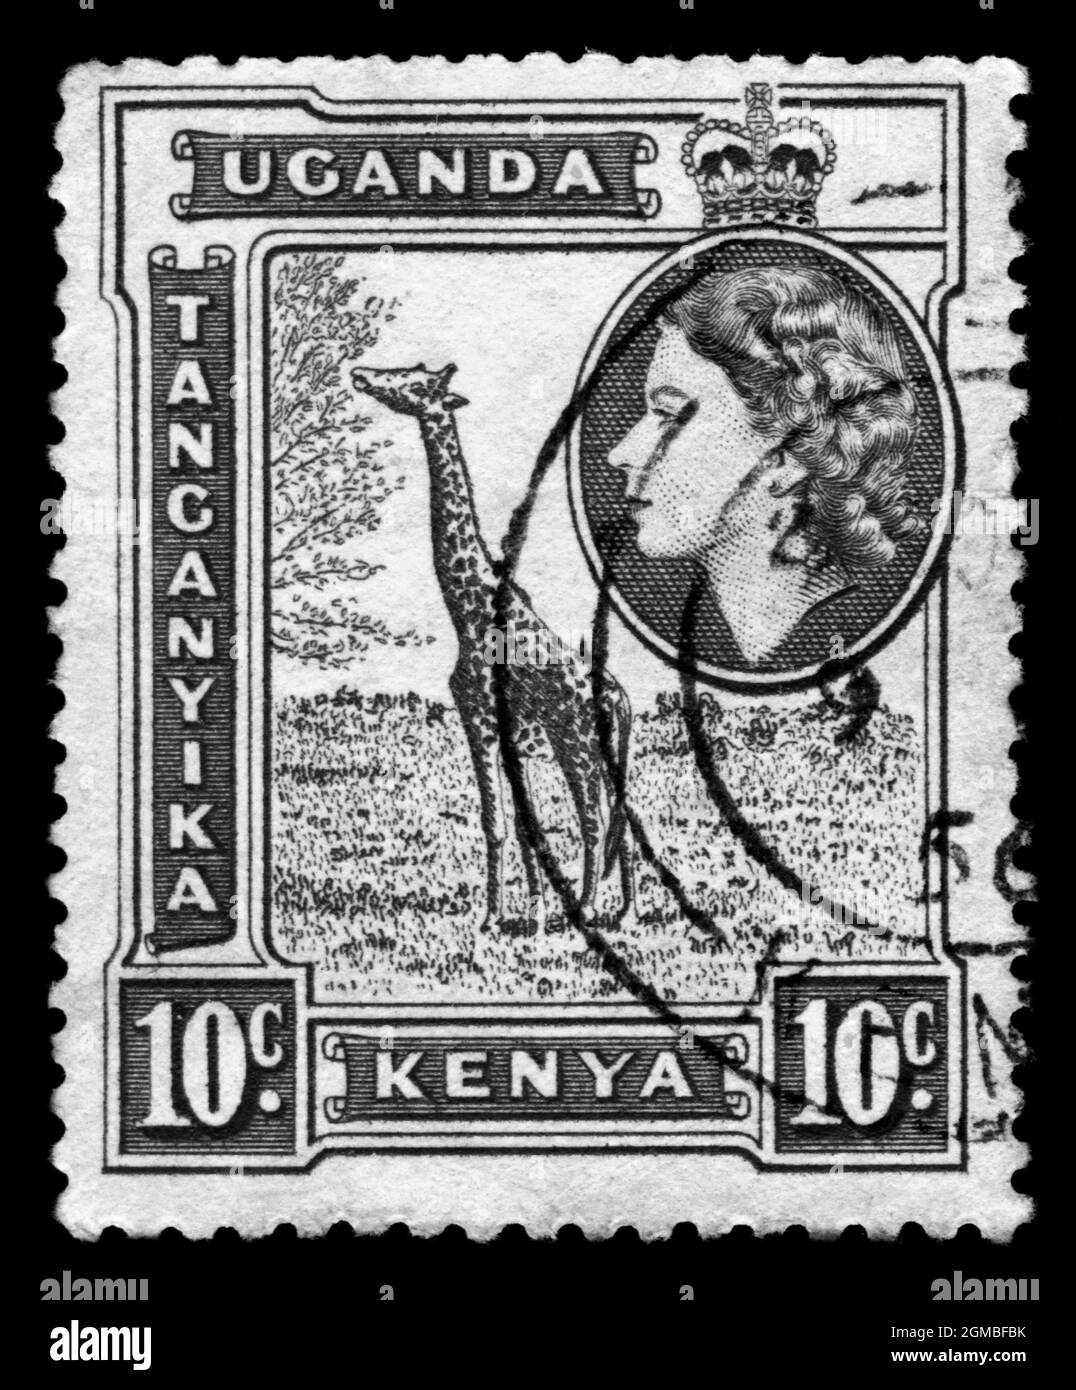 Stamp print in Uganda,Tanganyika,Kenya, animals,giraffe Stock Photo